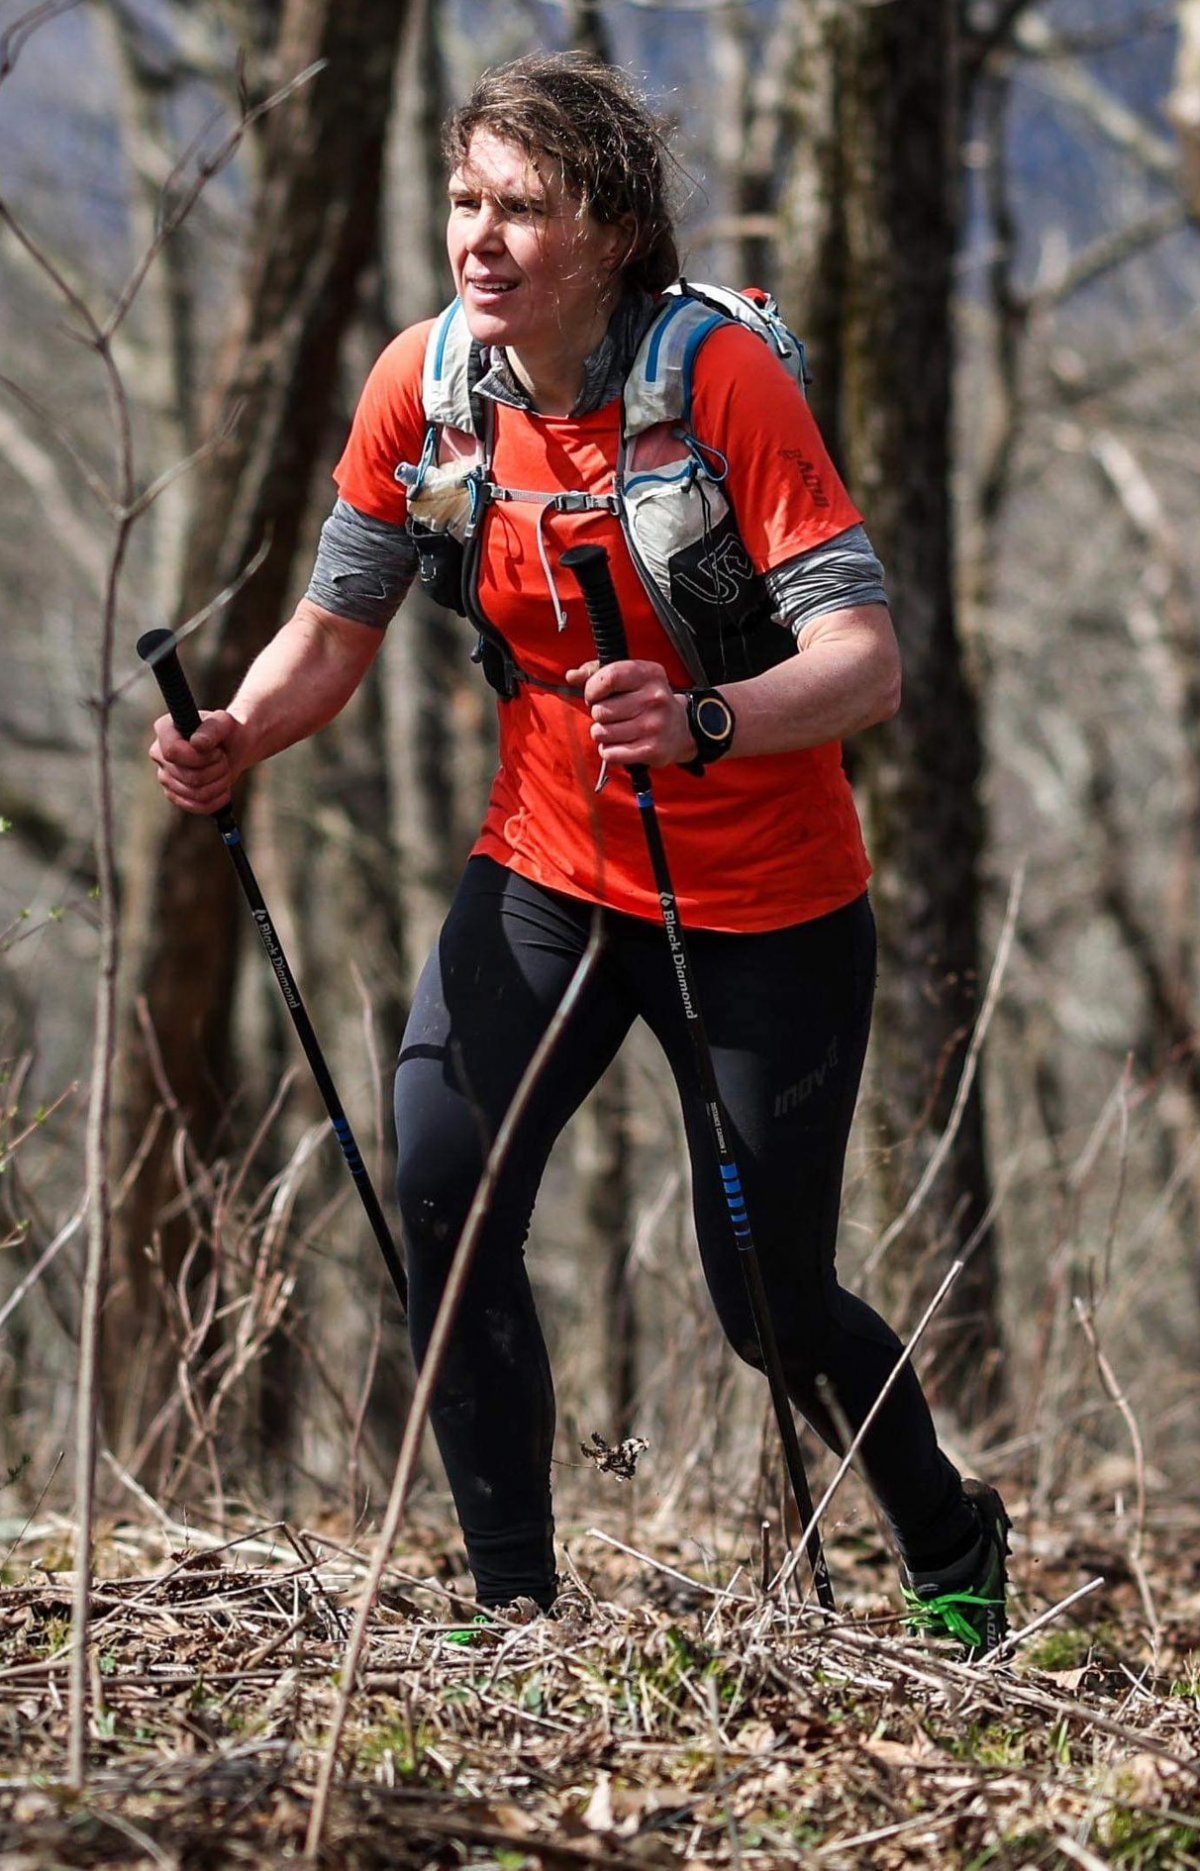 재스민 패리스 씨가 UTMB(울트라트레일몽블랑)에 참가해 달리고 있는 모습. UTMB 홈페이지 캡처.